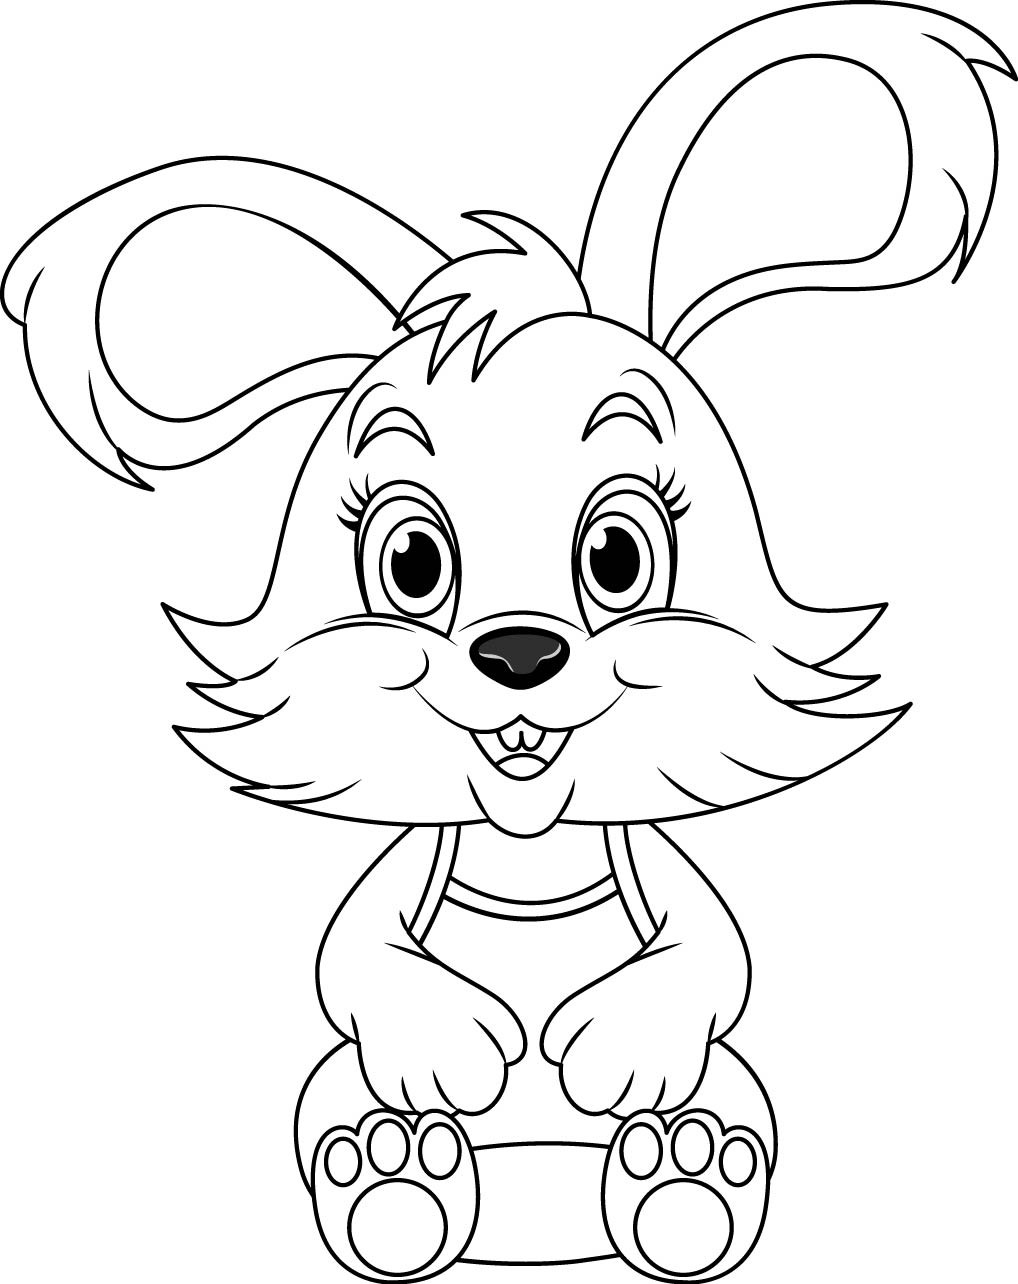 Раскраска для детей: контур милого кролика